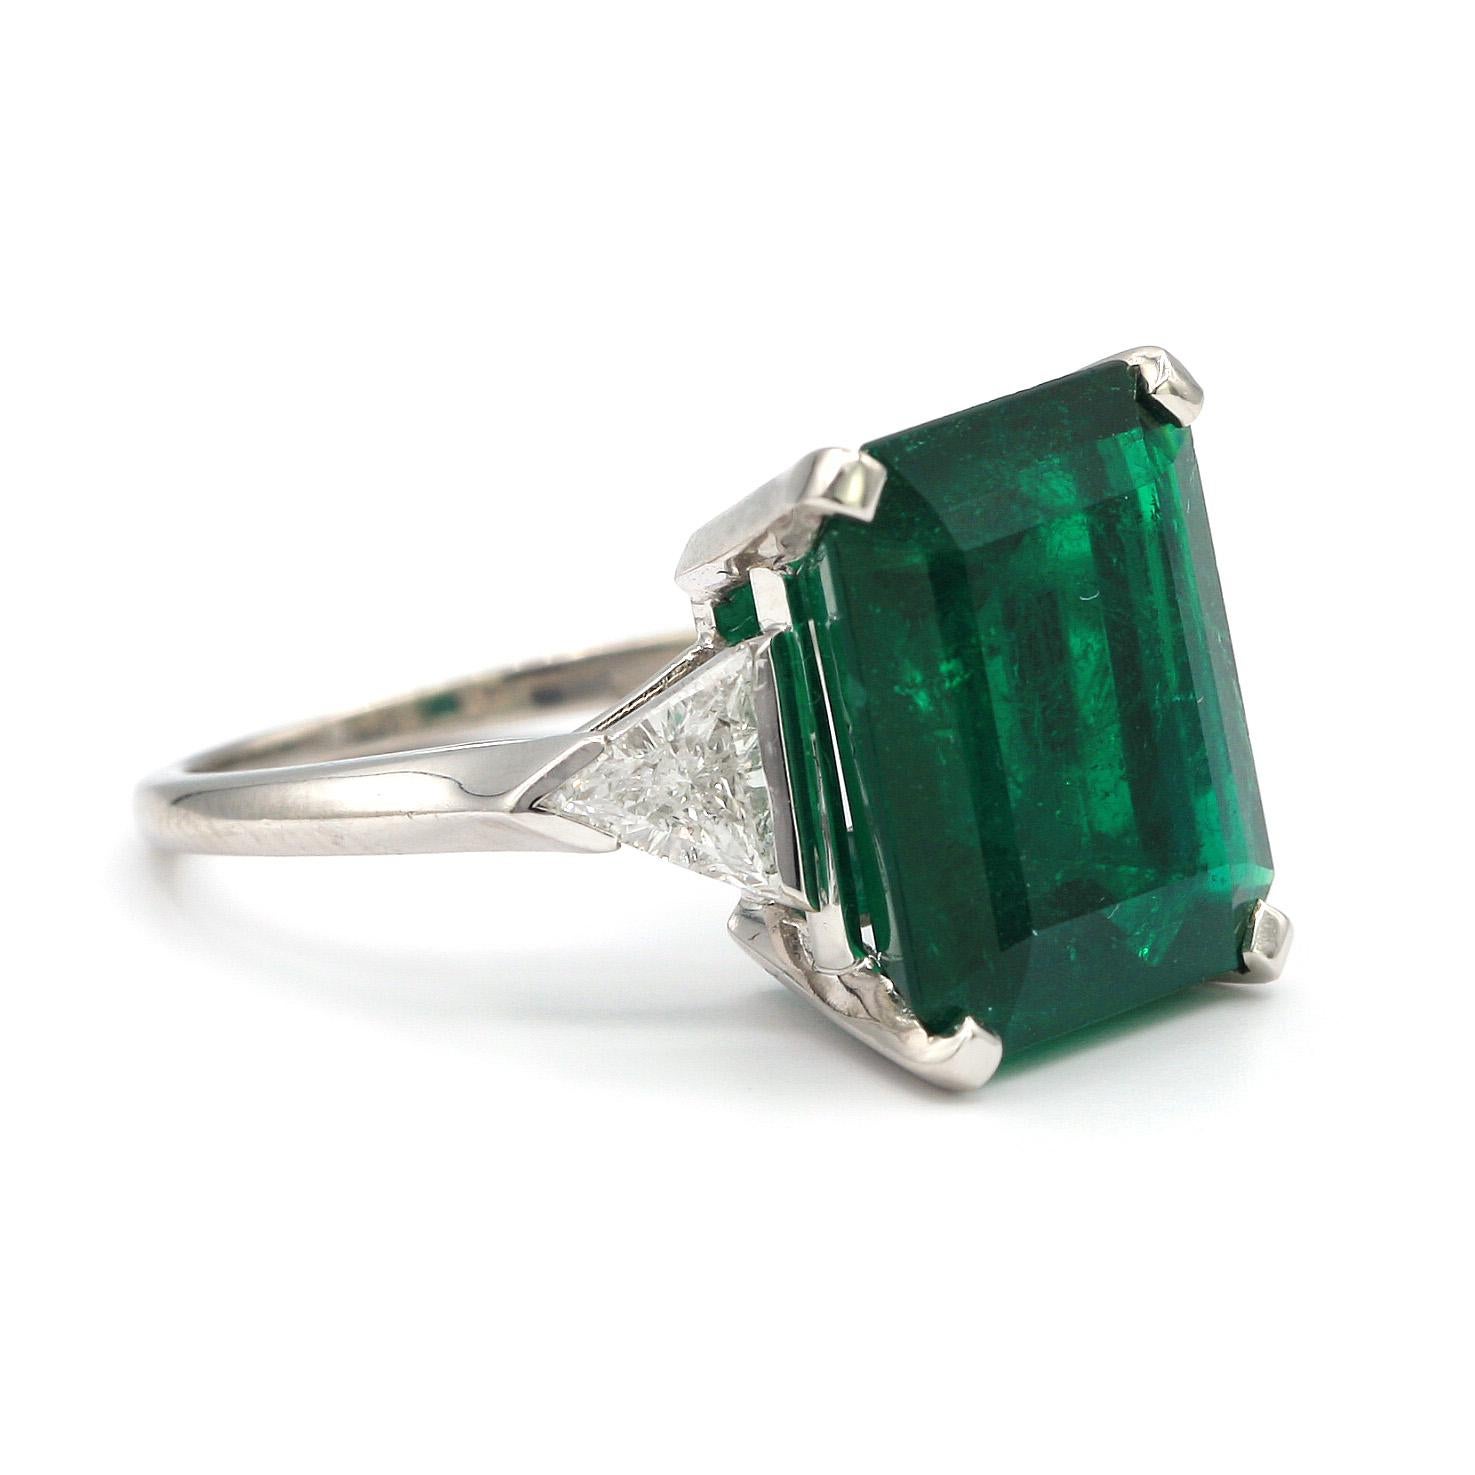 Emerald Cut 9.85 Carat Van Cleefs & Arpels Colombian Emerald Ring